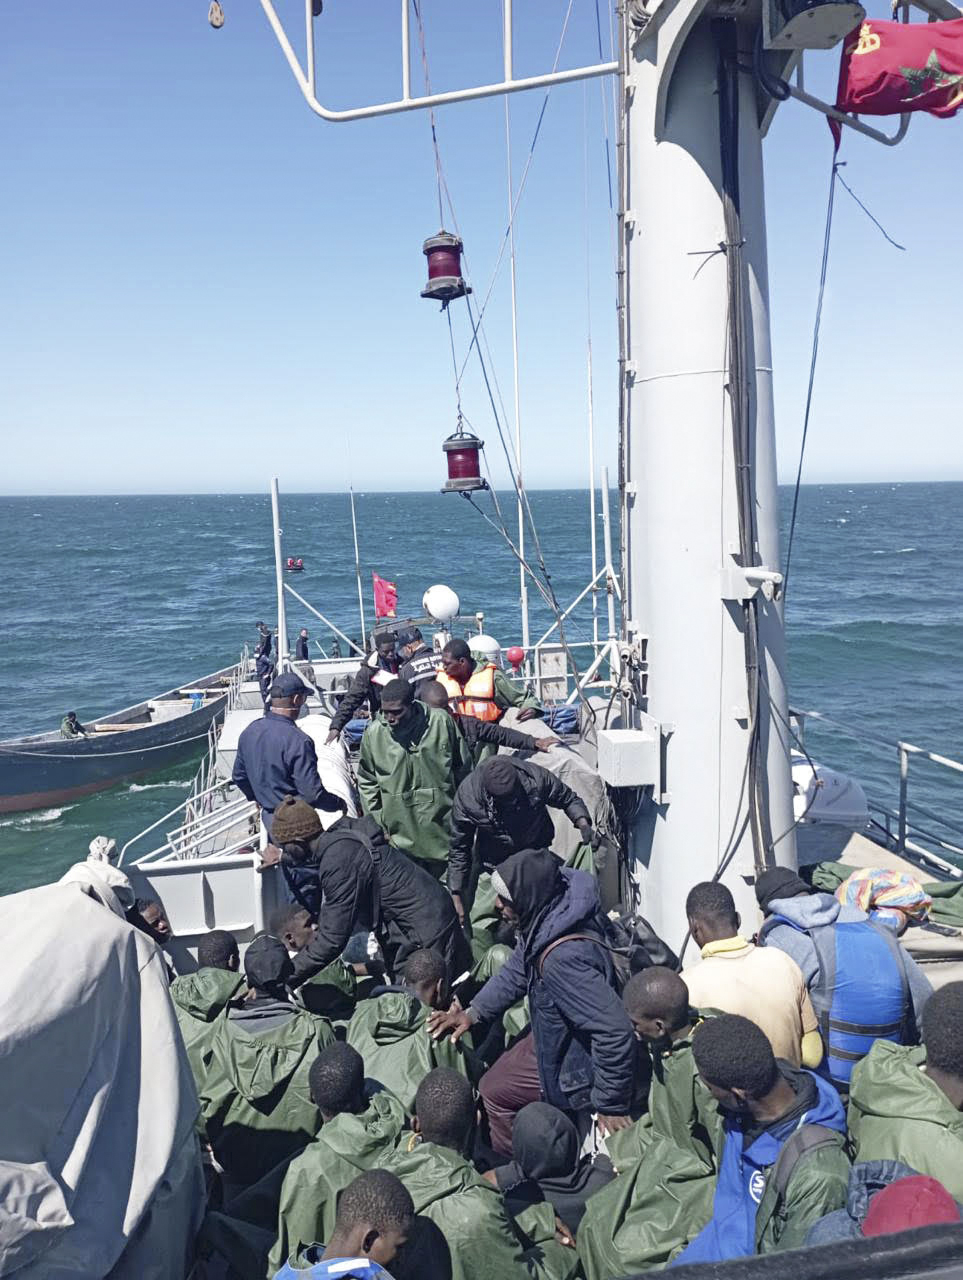 marina-real-marroqui-rescate-inmigrantes-1